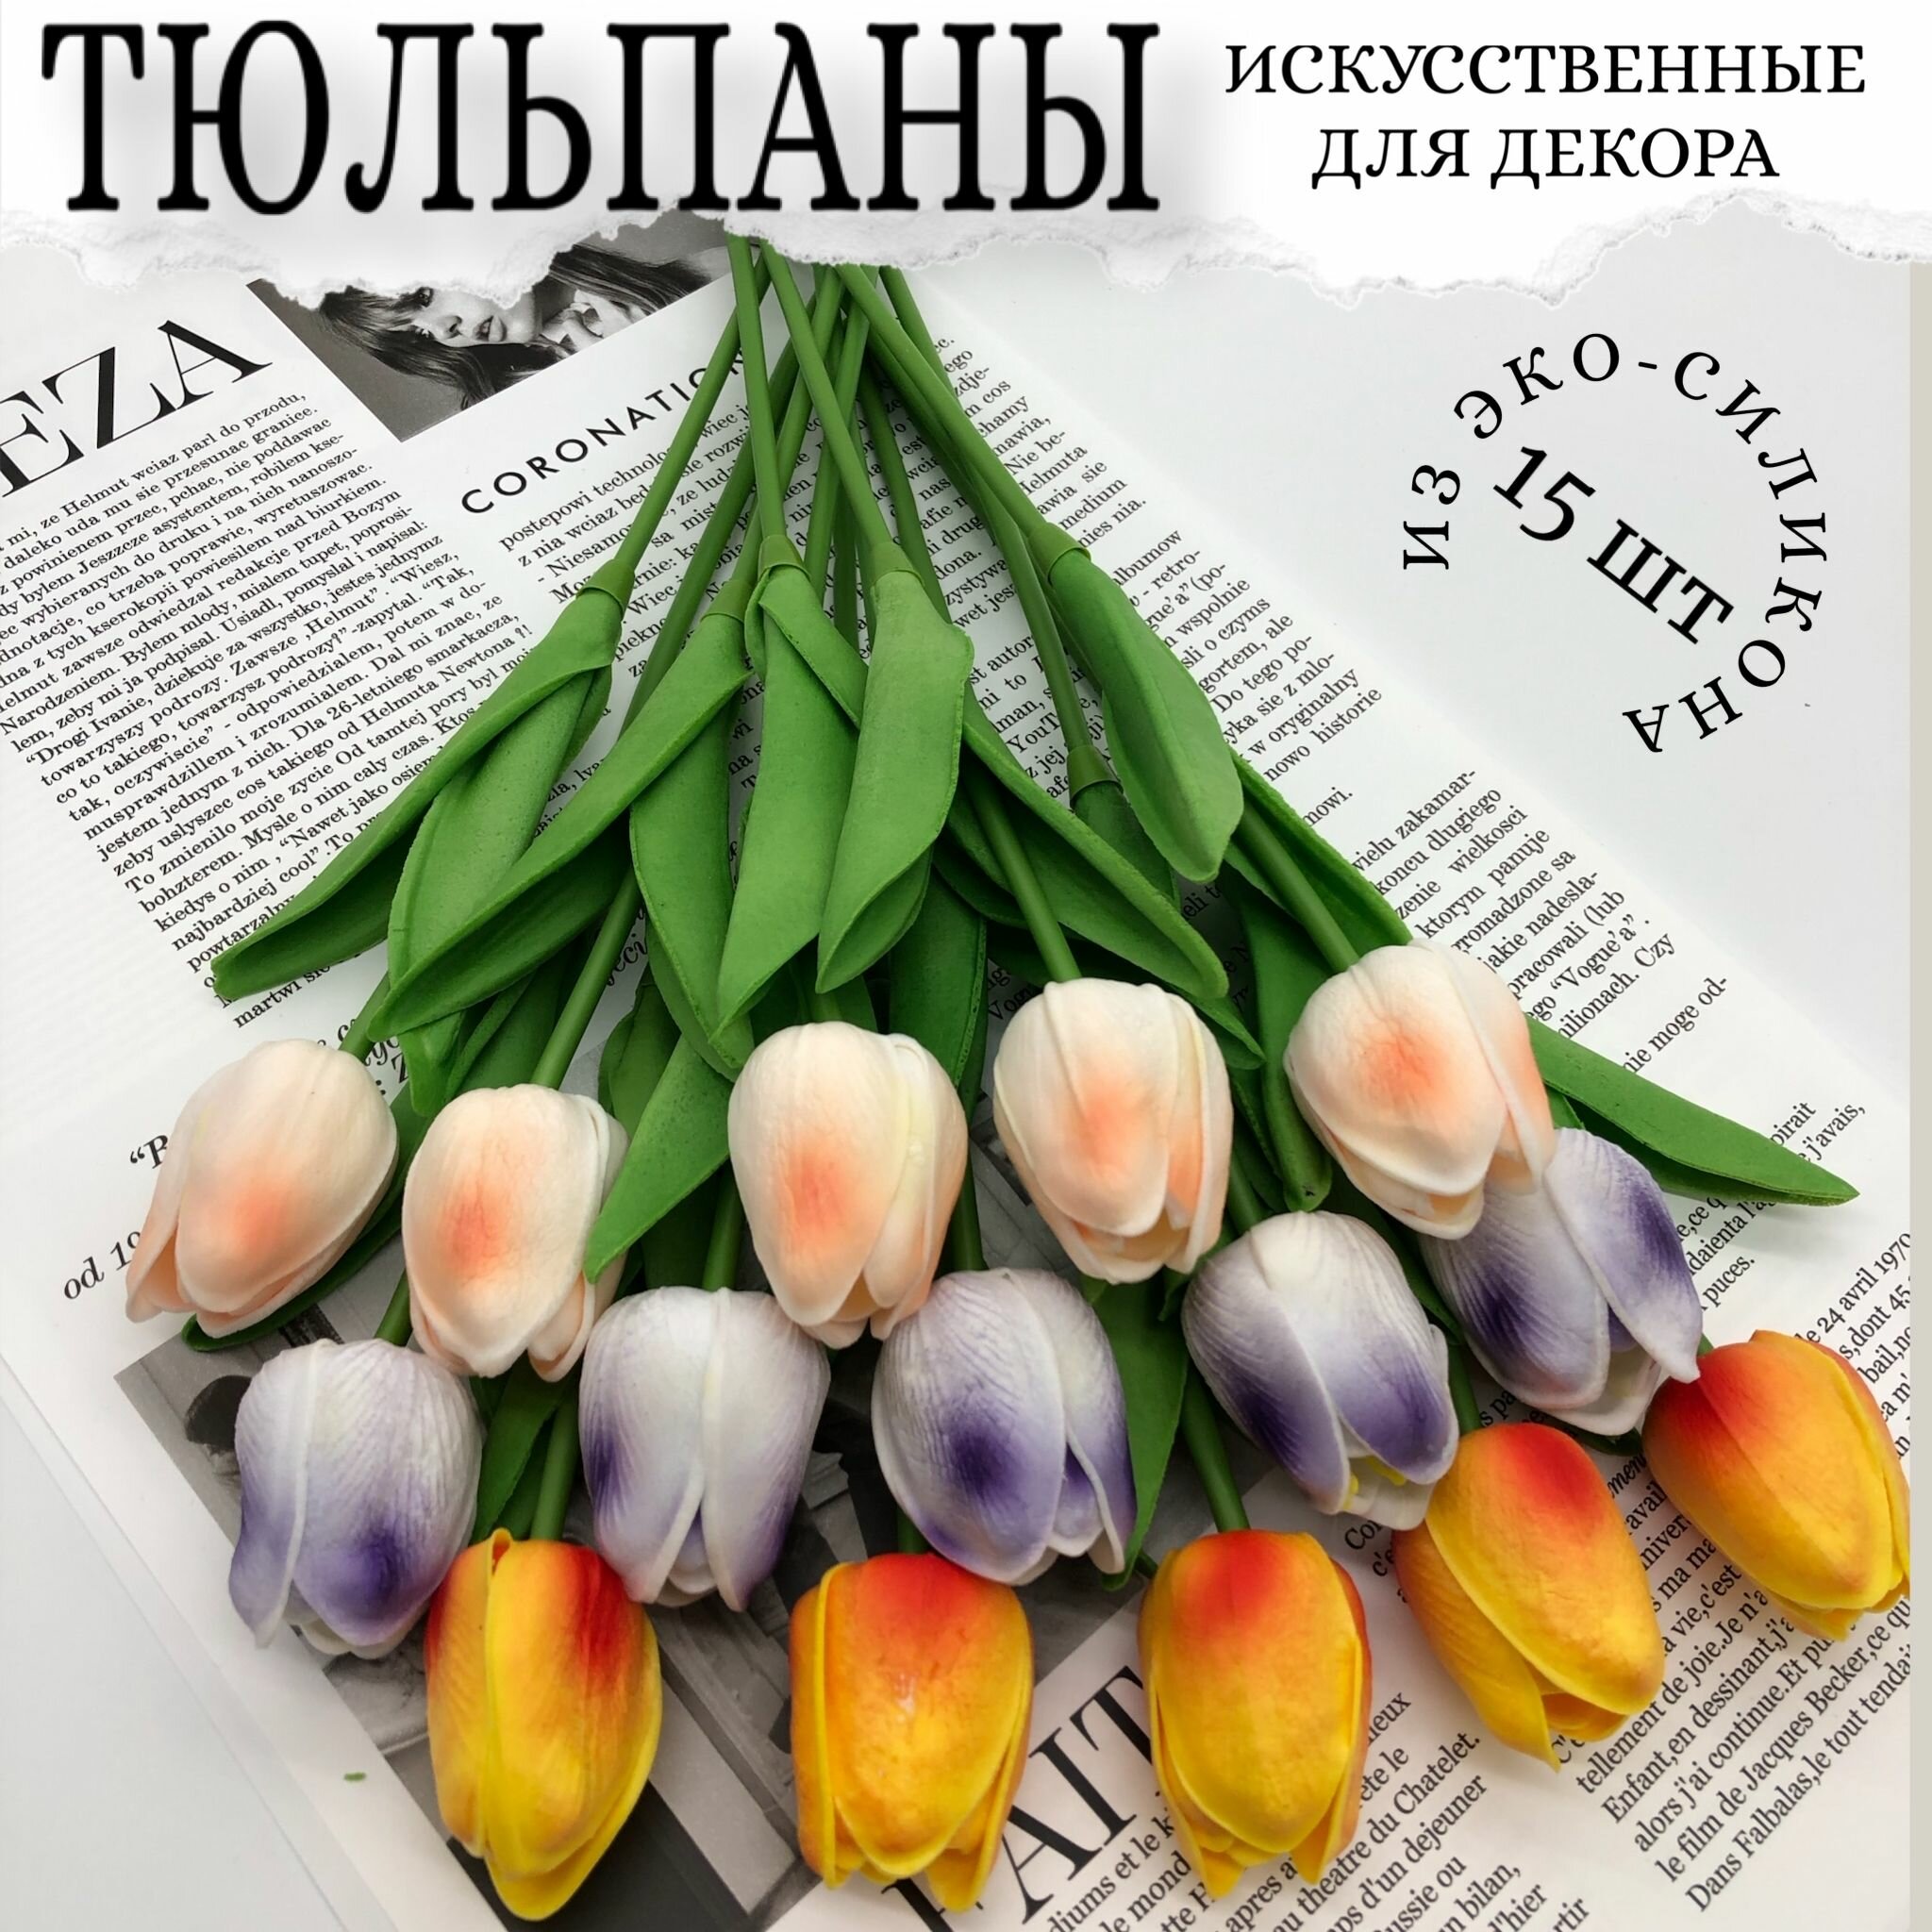 Тюльпаны силиконовые, искусственные цветы для декора, 15 шт.